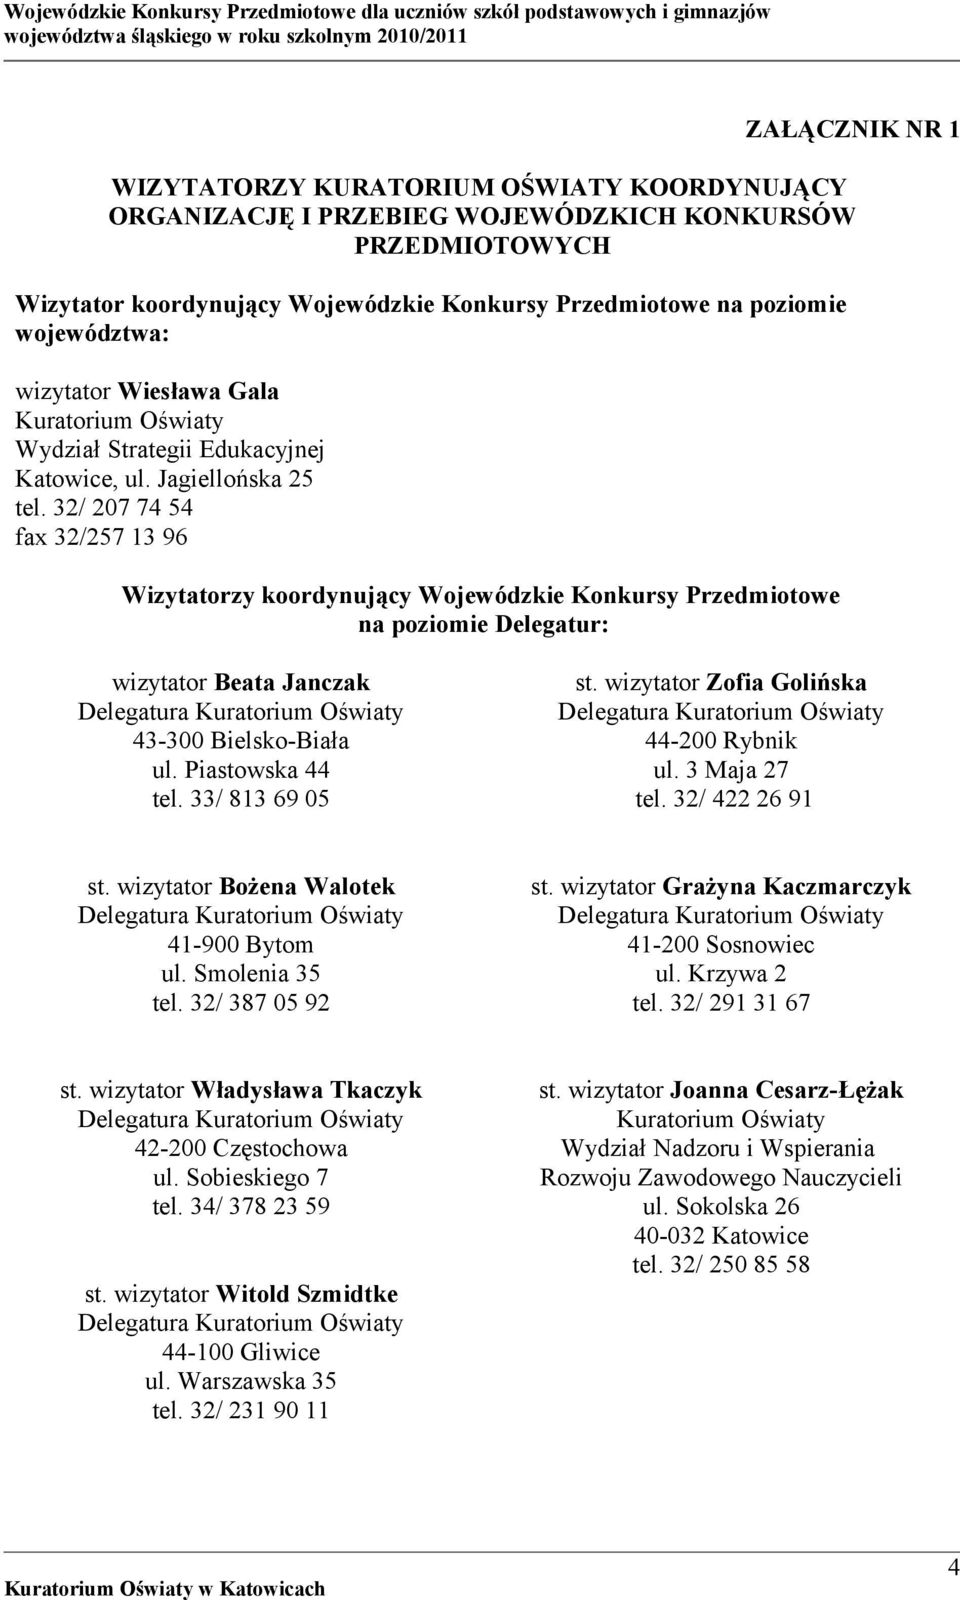 32/ 207 74 54 fax 32/257 13 96 Wizytatorzy koordynujący Wojewódzkie Konkursy Przedmiotowe na poziomie Delegatur: wizytator Beata Janczak 43-300 Bielsko-Biała ul. Piastowska 44 tel. 33/ 813 69 05 st.